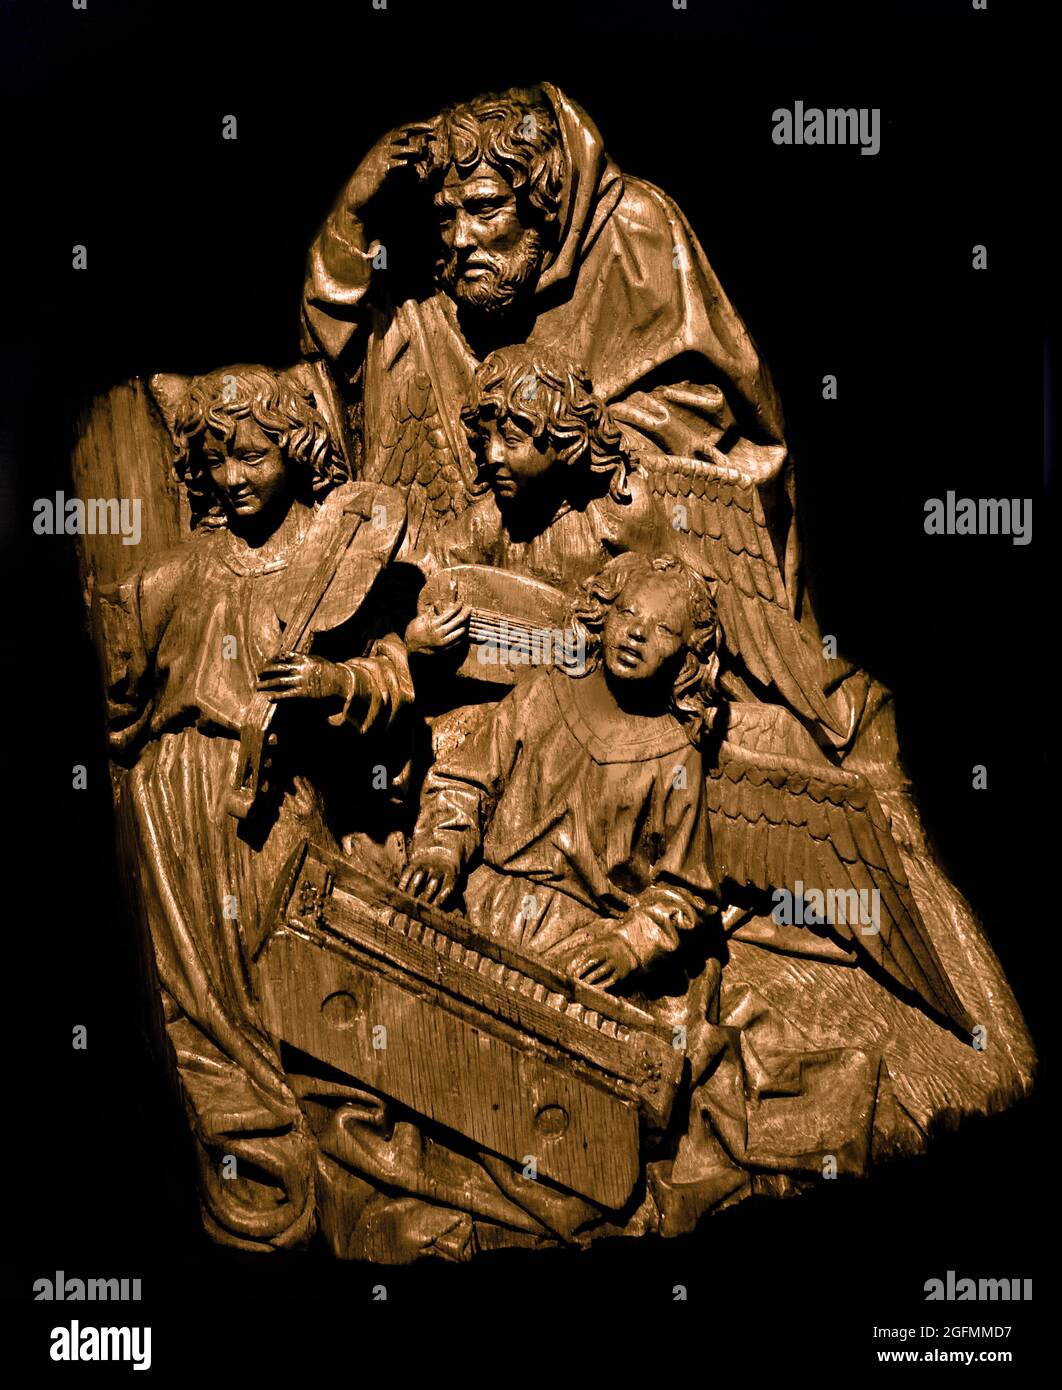 Mary, Joseph et Three Angels, Adriaen van Wesel, c. 1475 - c. 1477 chêne avec des traces de polychromie trois anges faisant de la musique avec Joseph, fragment de l'autel de Marie de la Fraternité notre Dame à Den Bosch Hollandais, pays-Bas . 1470 - 1480 ) ( la mort de la Vierge, fragment de l'autel Marial de l'illustre Fraternité de notre Sainte Dame à Den Bosch) ( Adriaen van Wesel était l'un des plus importants sculpteurs de bois du nord des pays-Bas, connu bien au-delà de sa ville natale d'Utrecht. Son travail comprend de grands autels pour les églises de Delft, Zwolle, ‘s Hertogenbosch et Utrecht ) Banque D'Images